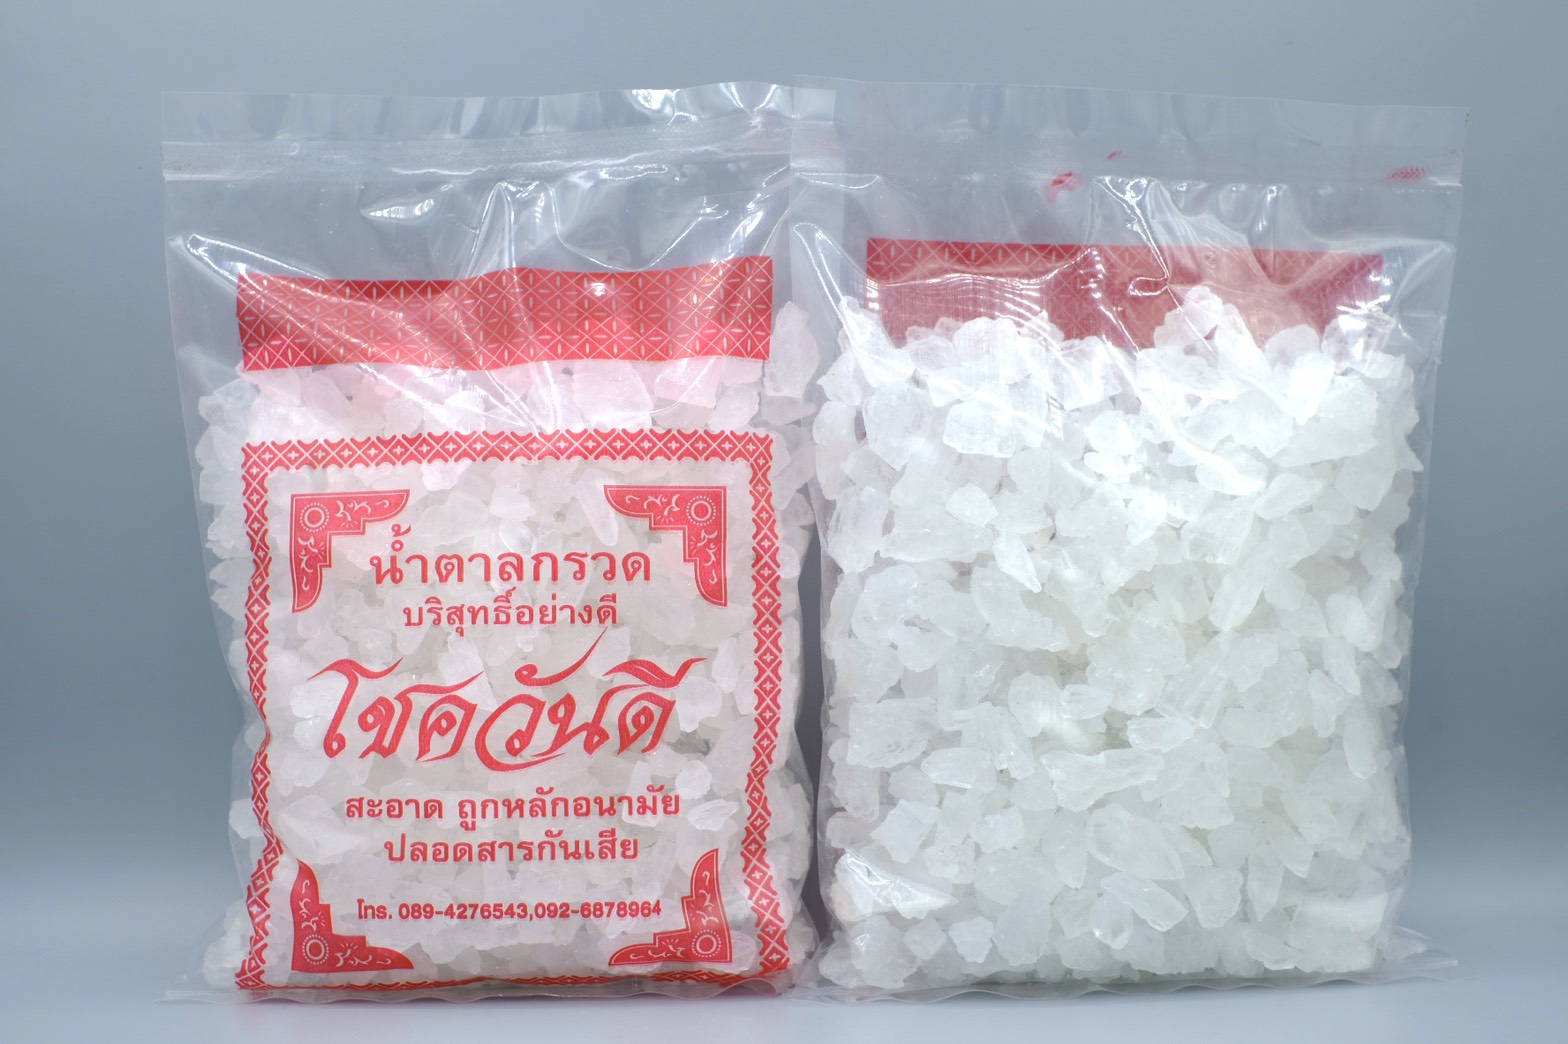 น้ำตาลกรวด 500 กรัม (1 ถุงเล็ก) คละก้อนจิ๋ว